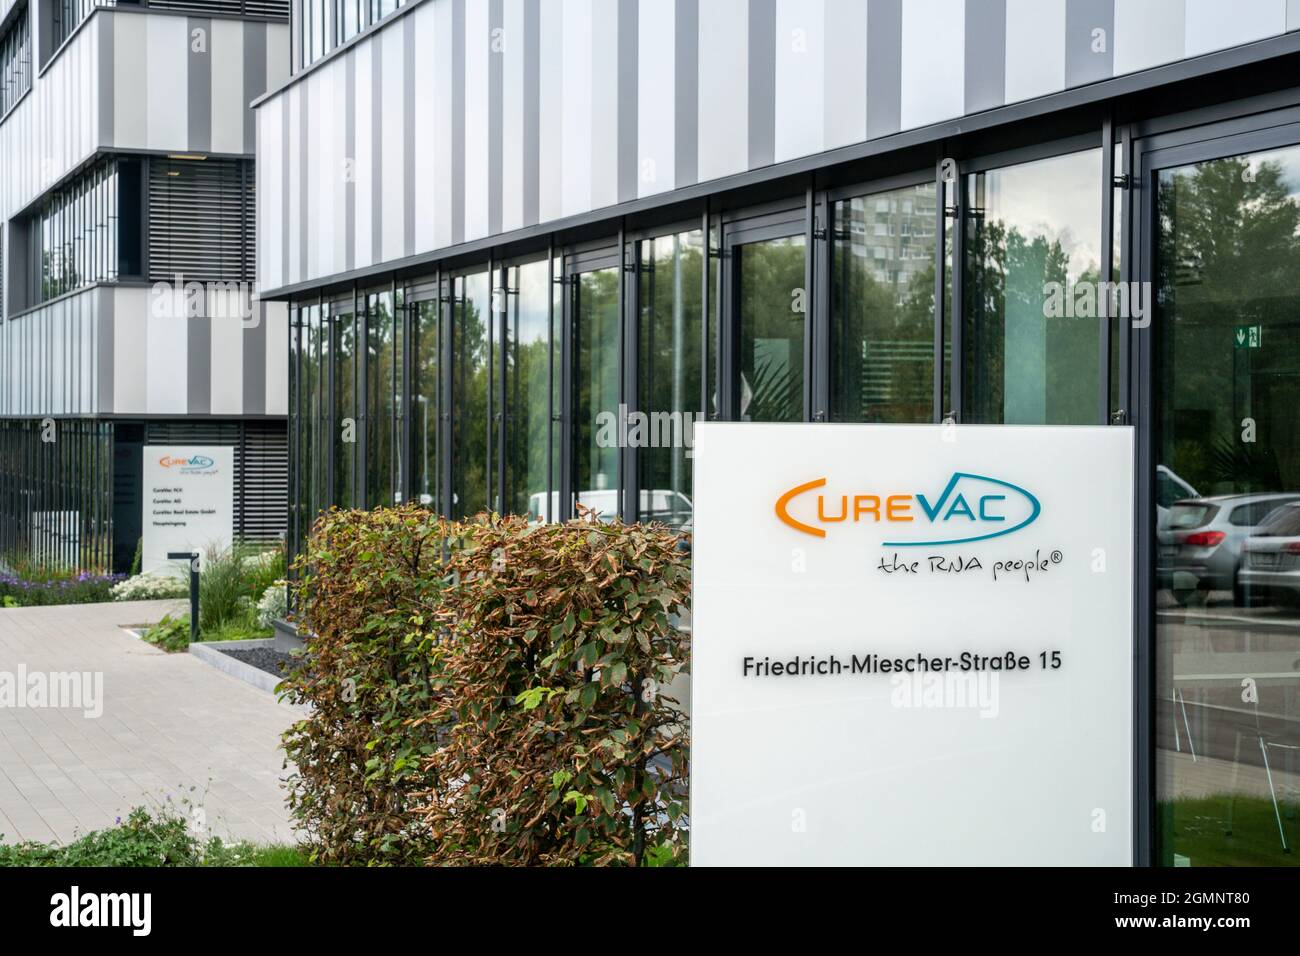 CureVac GmbH im Technologiepark Tübingen-Reutlingen, Gründerzentrum für Biotechnologie, entwickelt Impfstoff gegen Coronavirus, COVID-19 Pandemie, Tüb Foto Stock